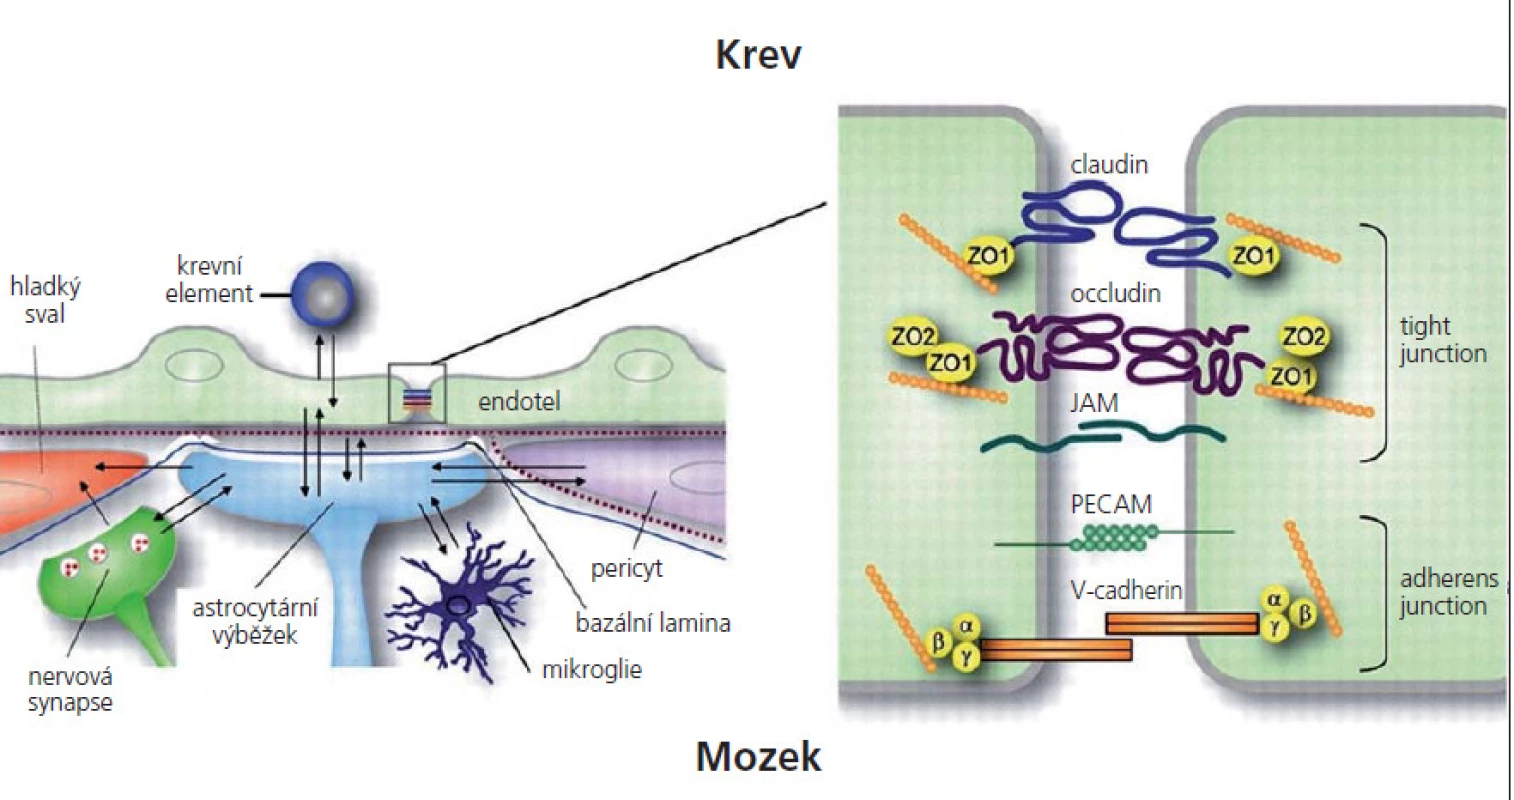 Struktura hematoencefalické bariéry.
JAM – junkční adhezní molekuly, PECAM – endoteliální adhezní molekuly, ZO – zona occludens.